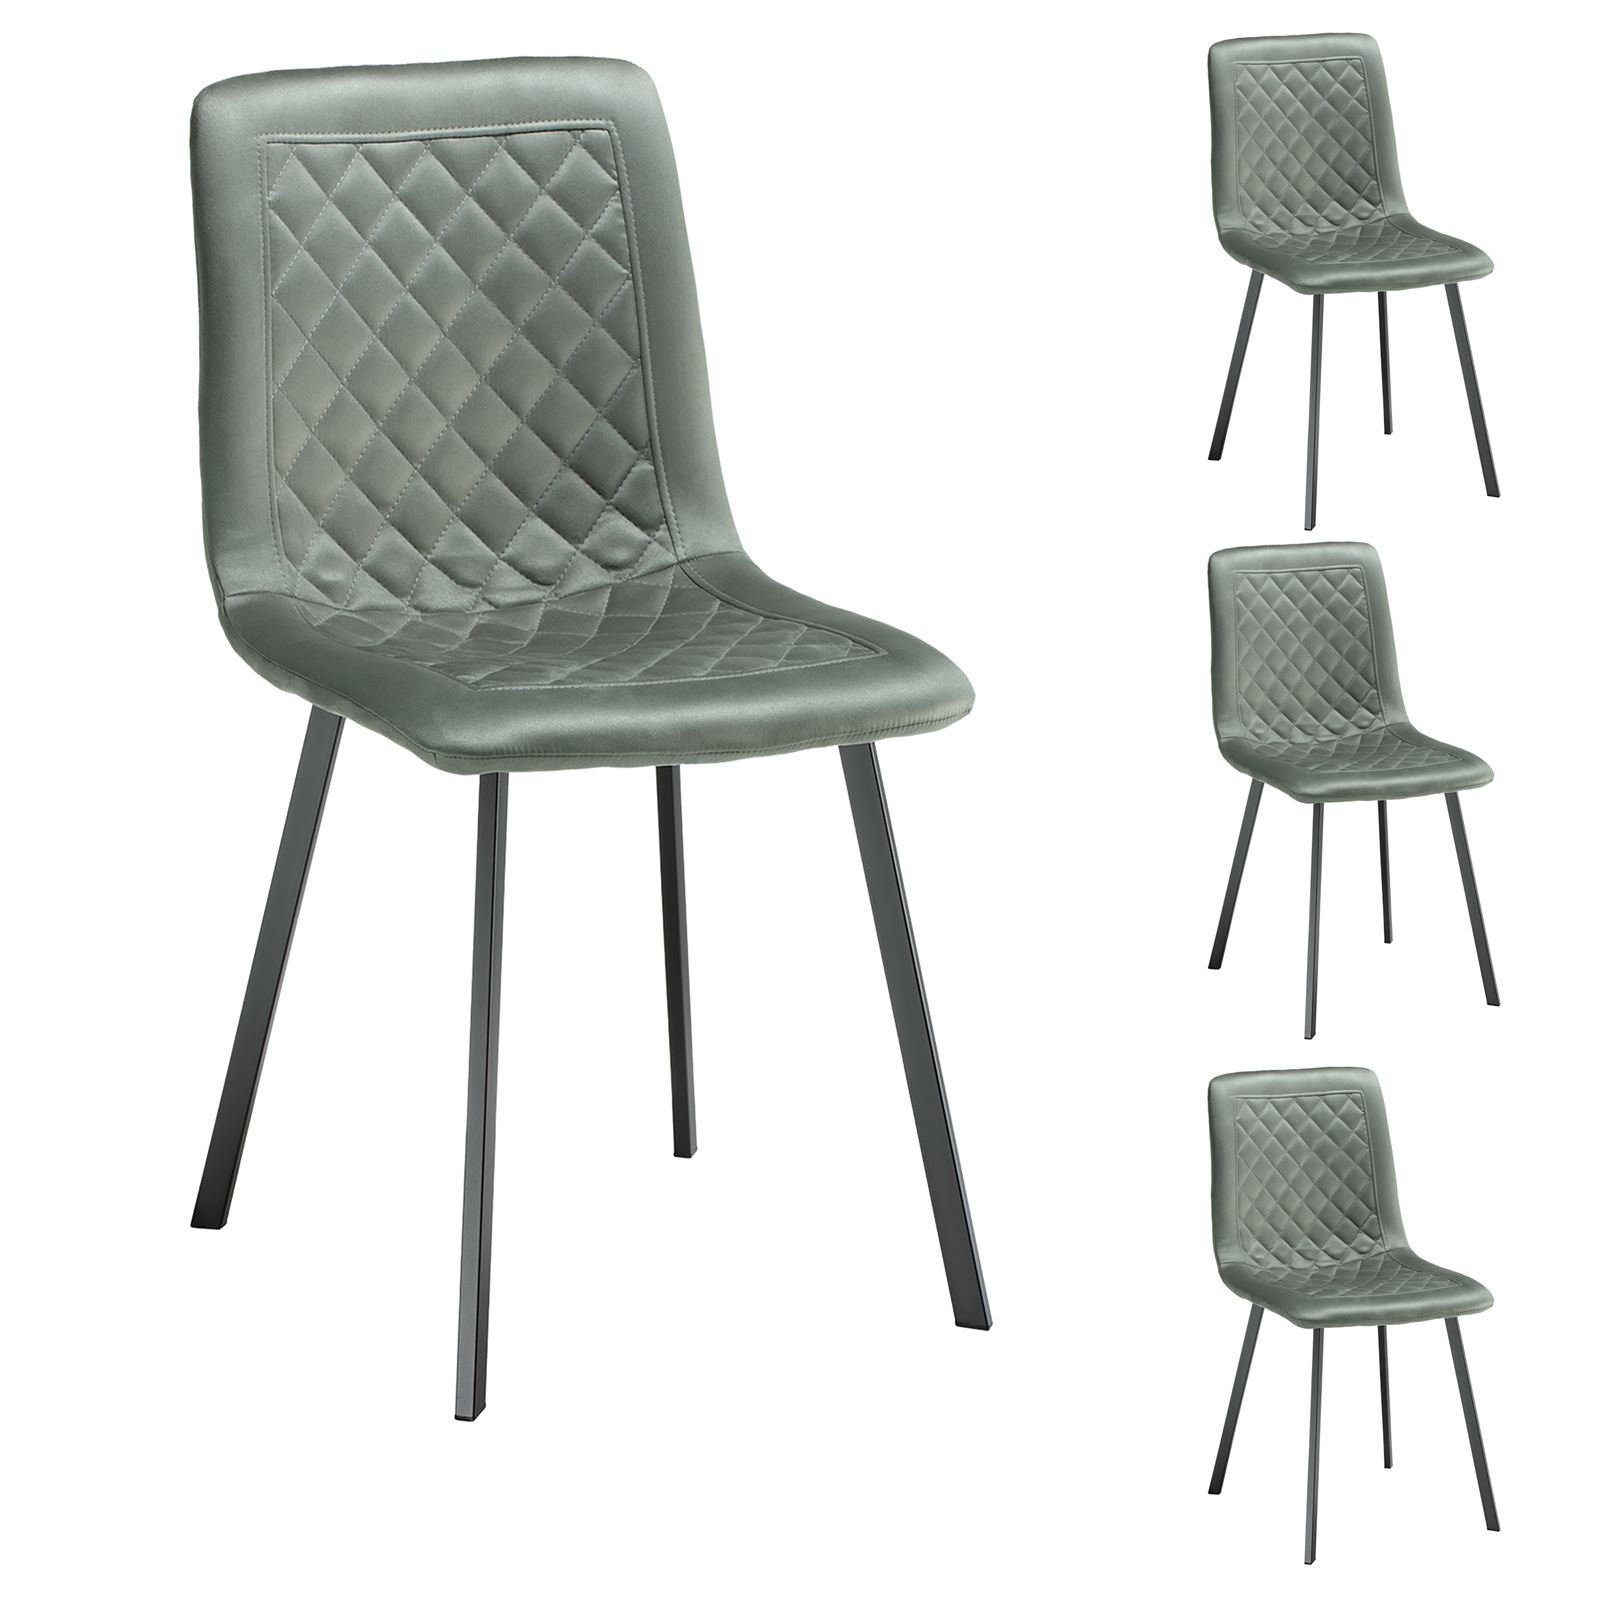 Esszimmerstuhl Metallgestell CARO-Möbel grün Esszimmerstuhl 4-Fuß-Stuhl Wabe St), 4er-Set (4 Küchenstuhl